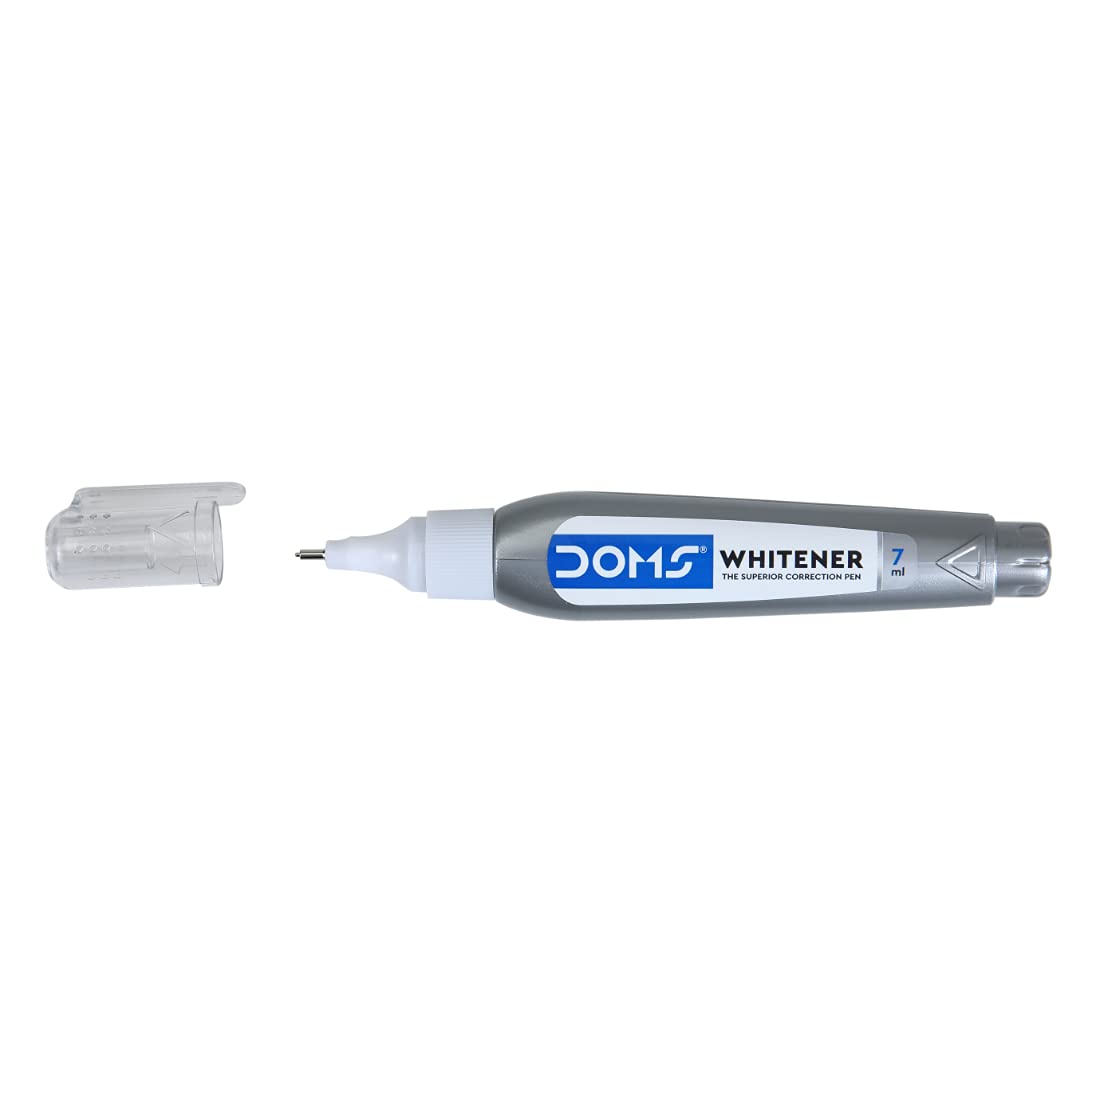 Doms Whitener, Non-Toxic Superior Correction Pen, 7ml